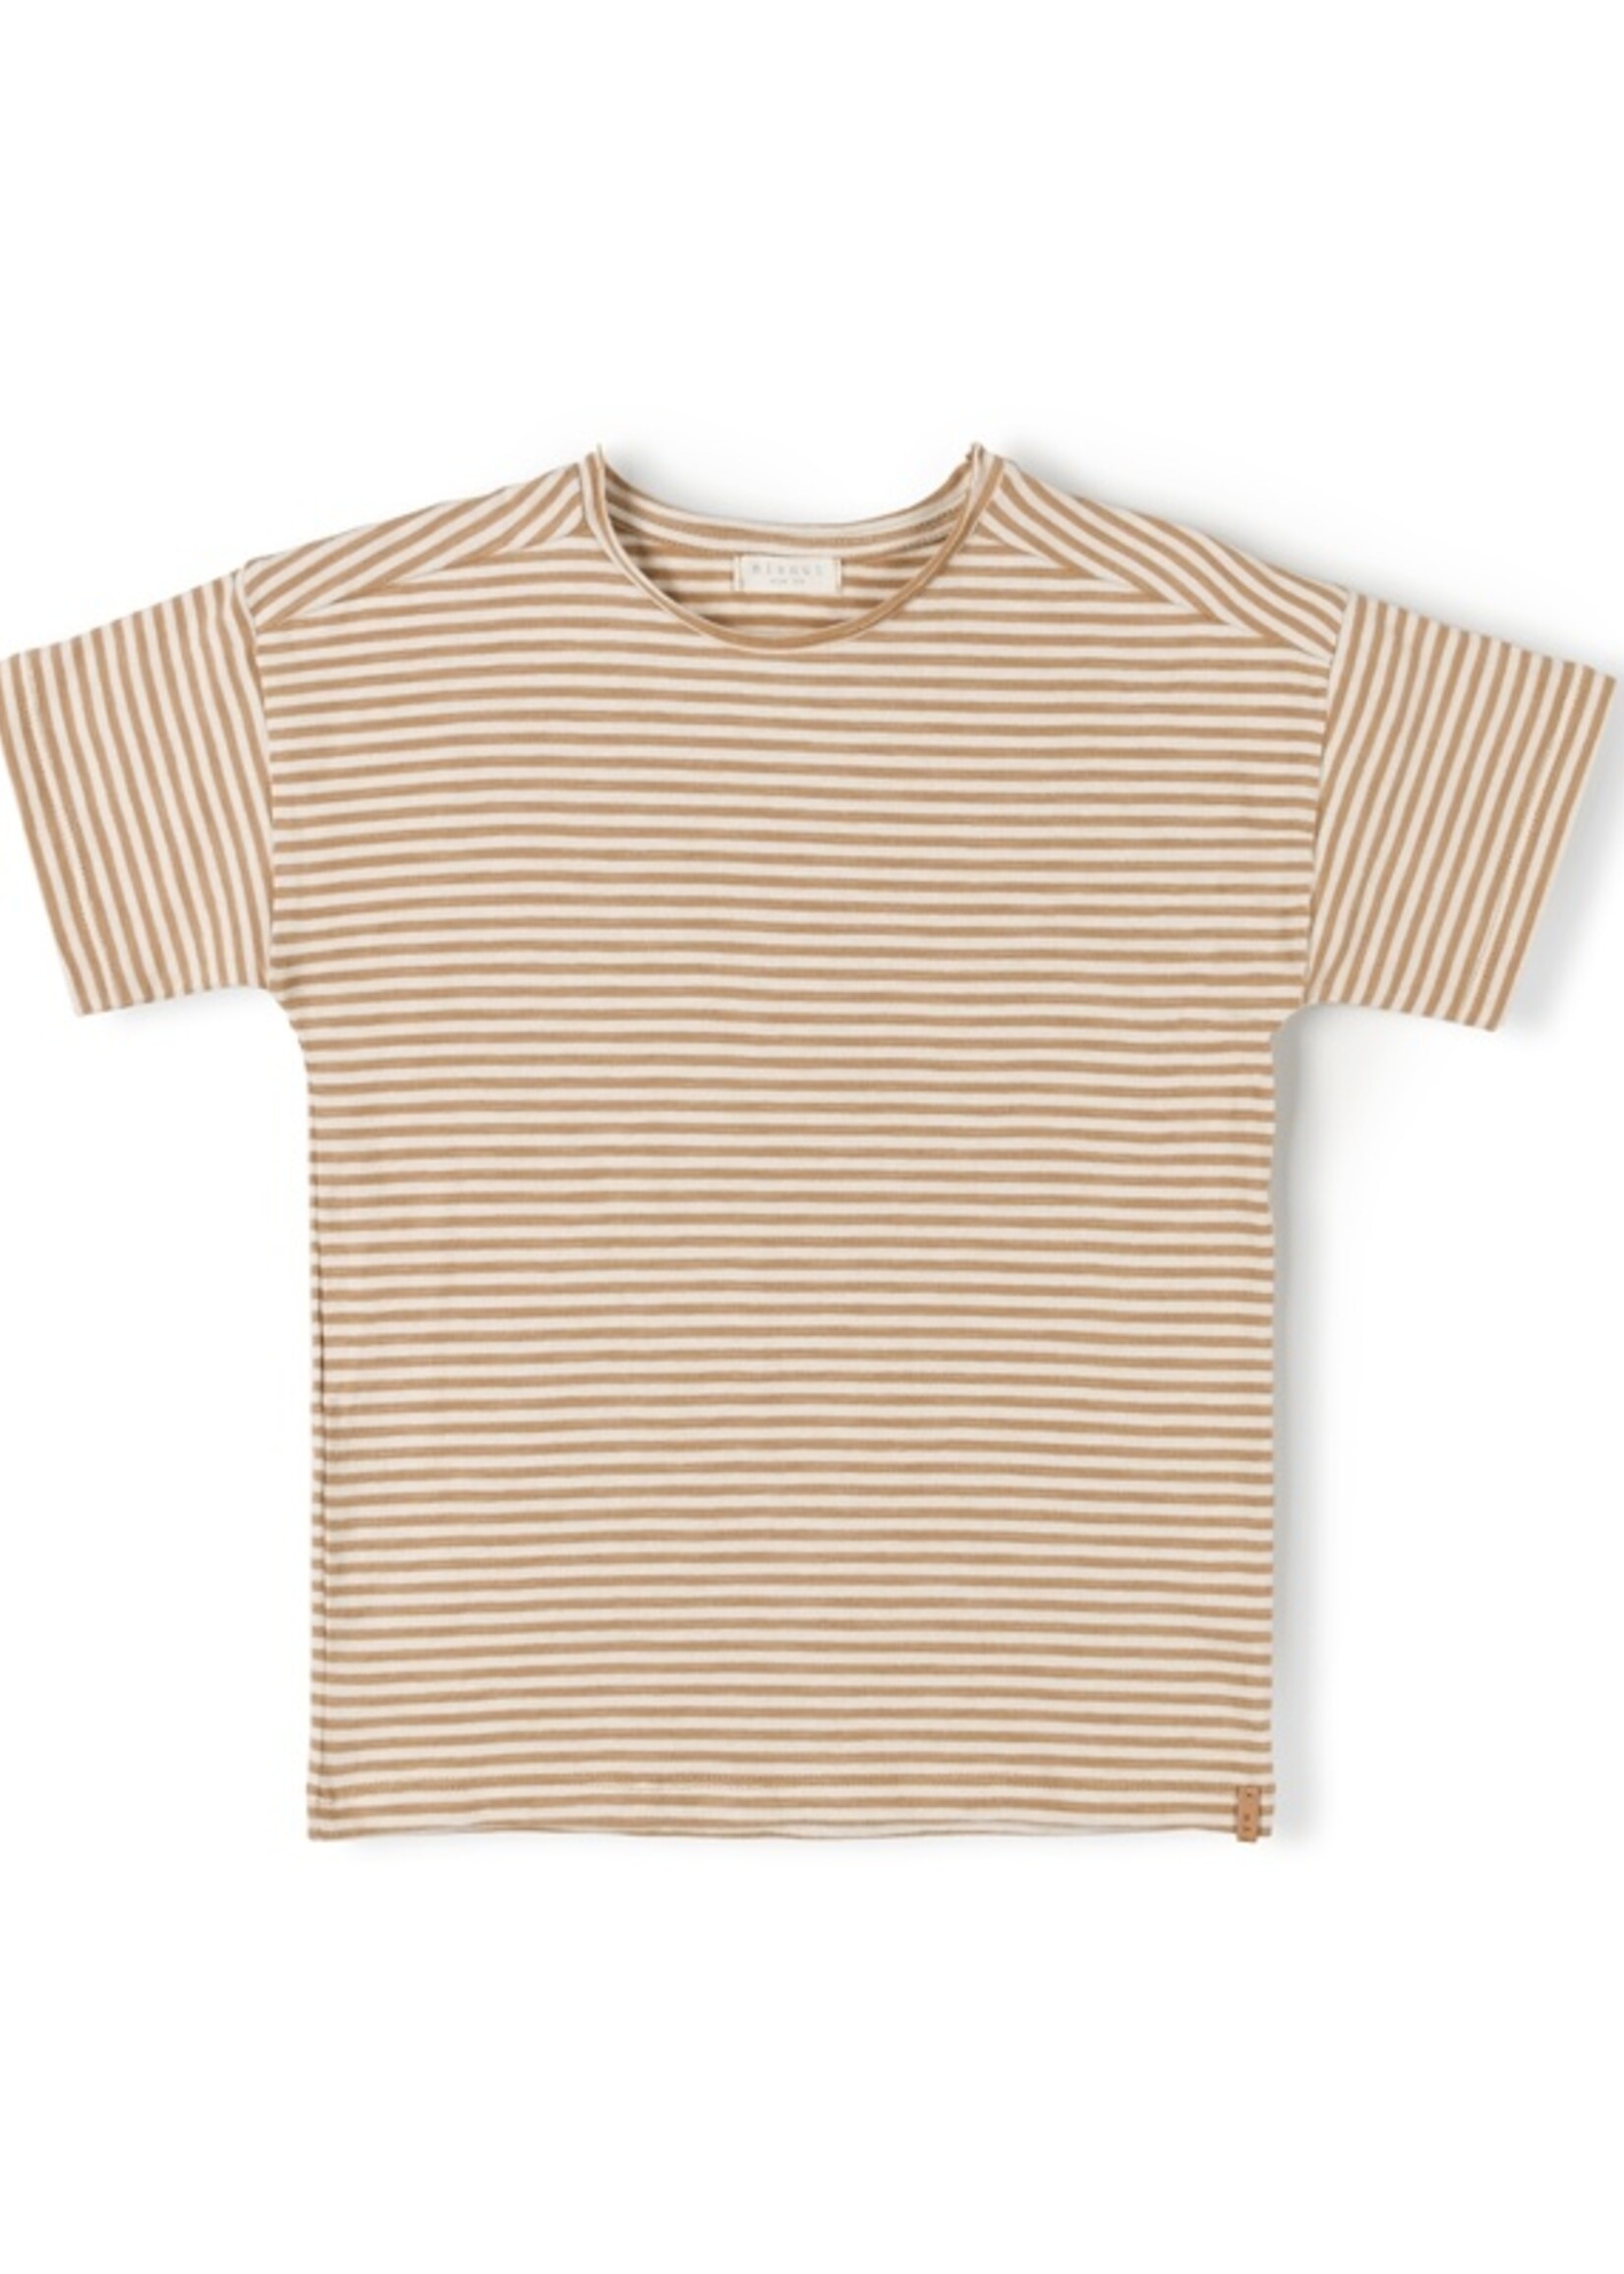 Nixnut Nixnut | Drop Shirt - Caramel Stripe